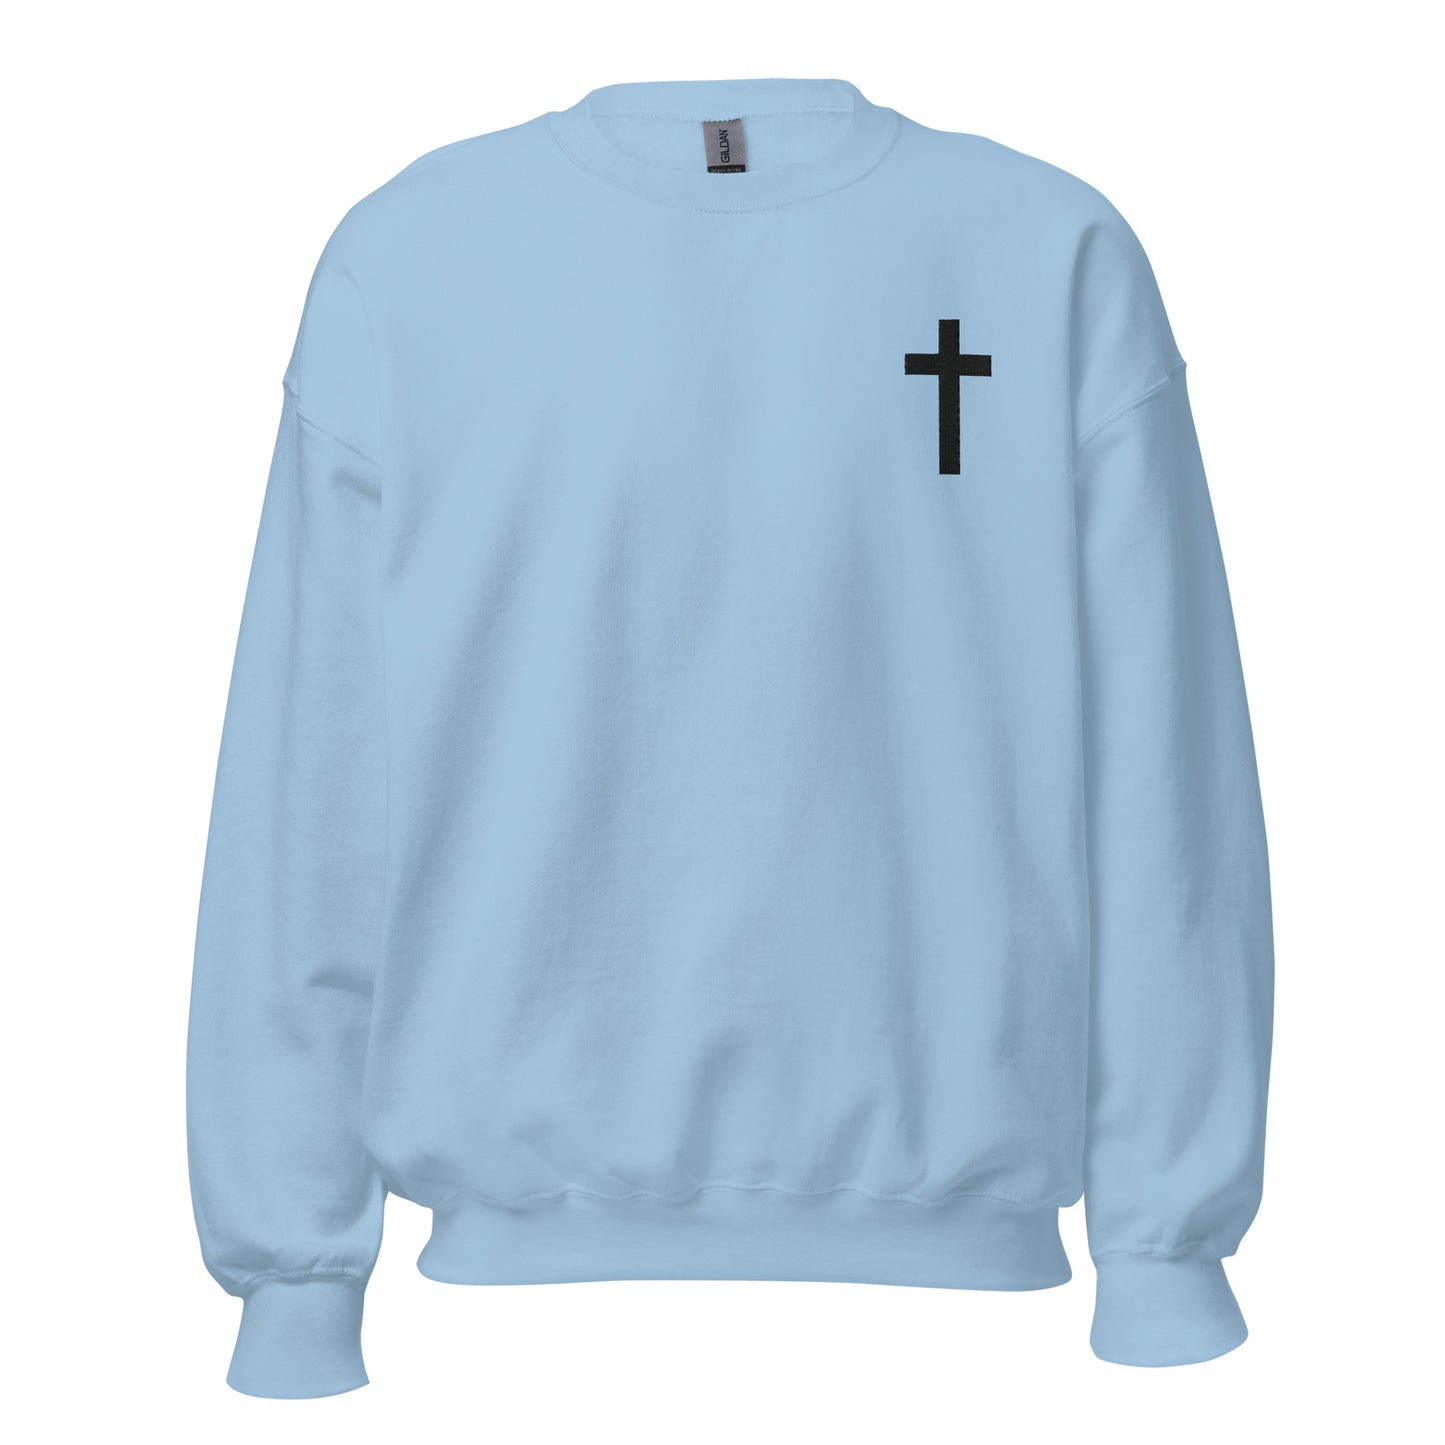 Christian Sweatshirt